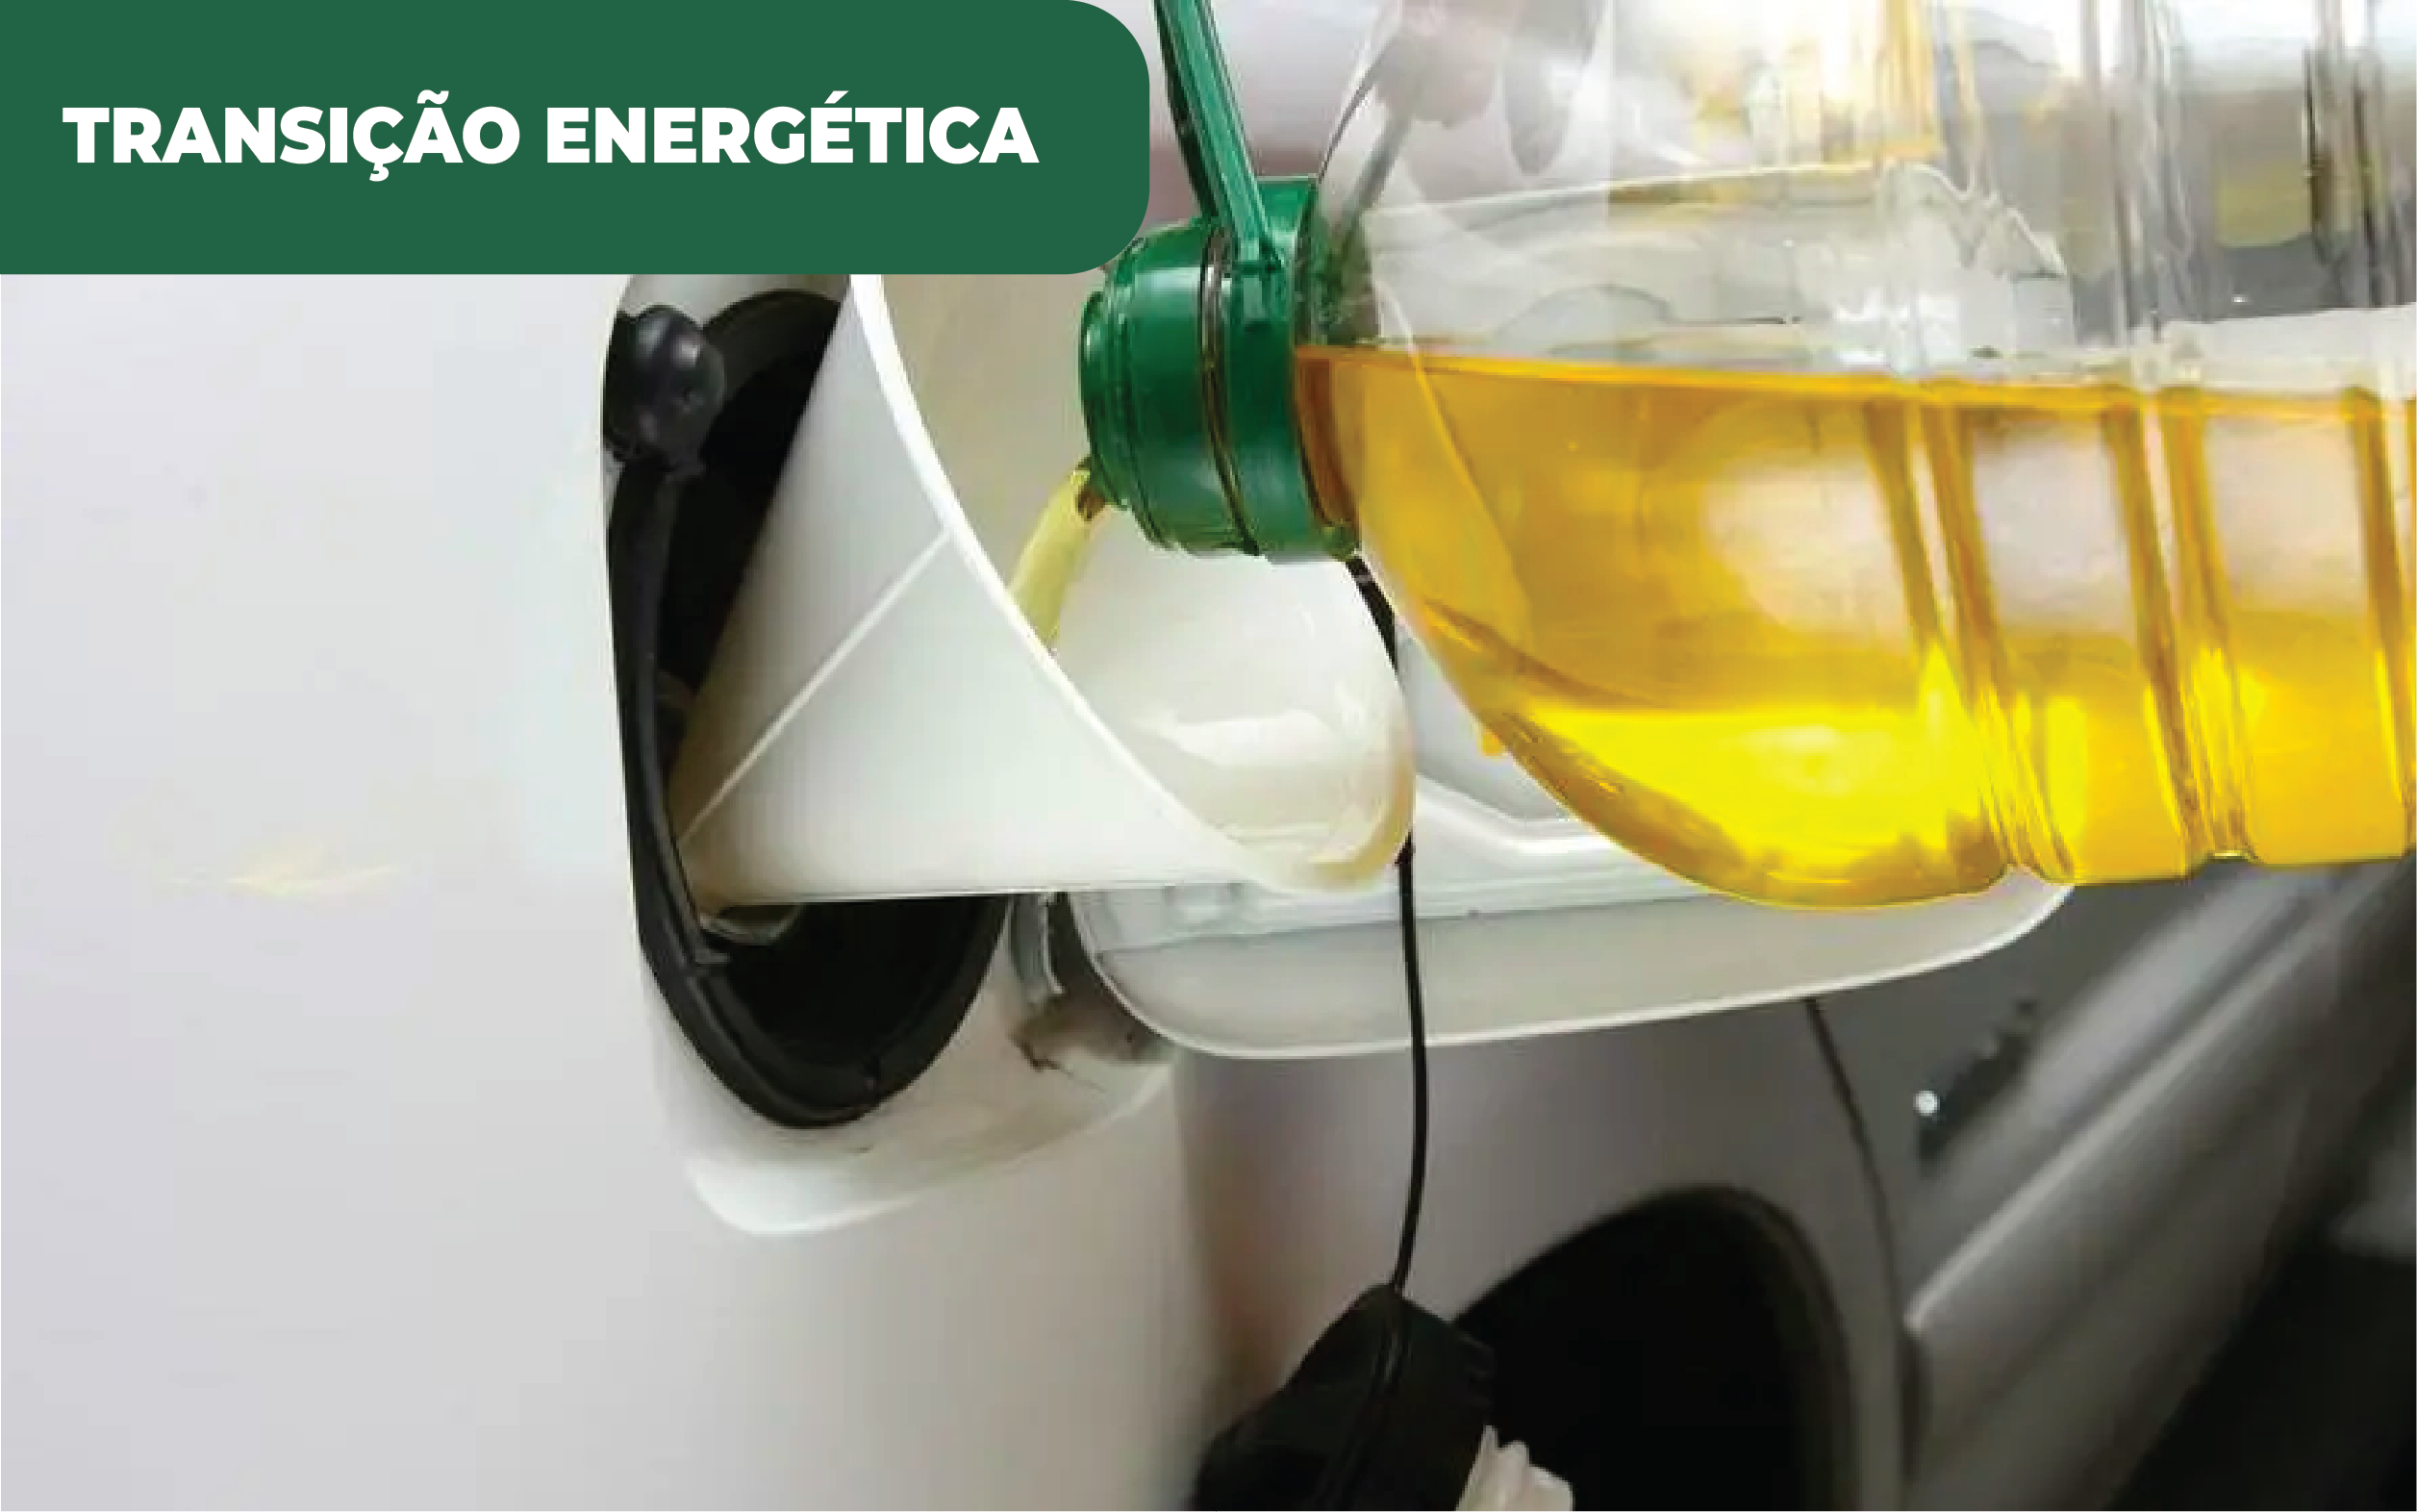 Imagem colorida de abastecimento de combustível num automóvel através de um garrafão - aludindo a biocombustível